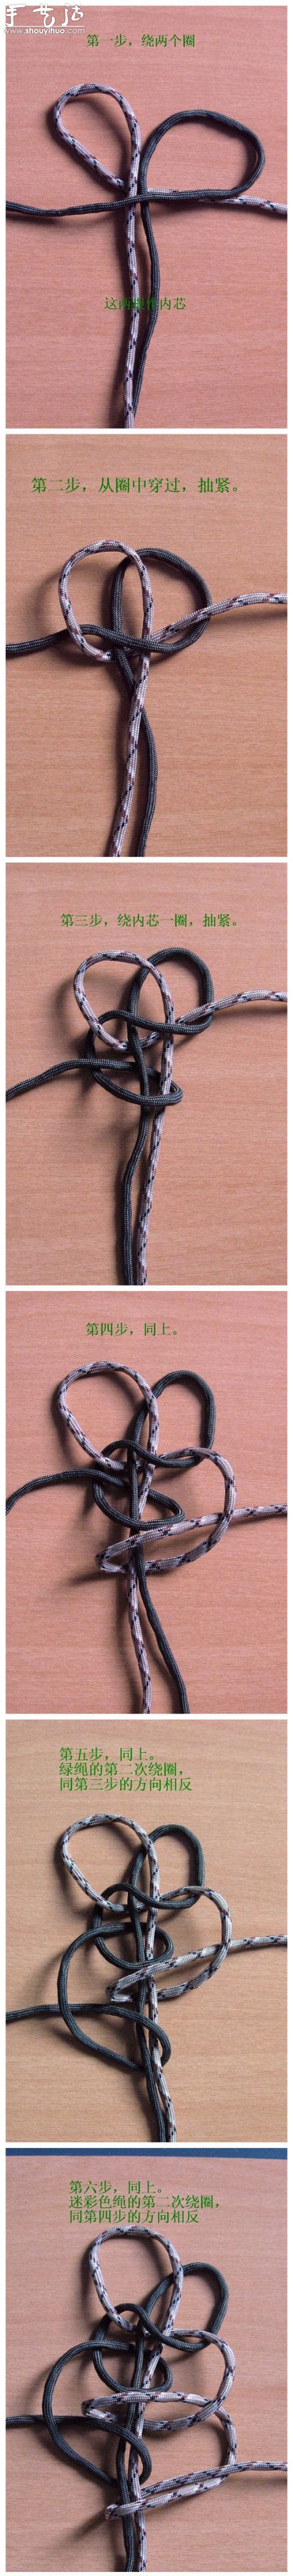 绳子手工编织漂亮手链的方法教程 -  www.shouyihuo.com